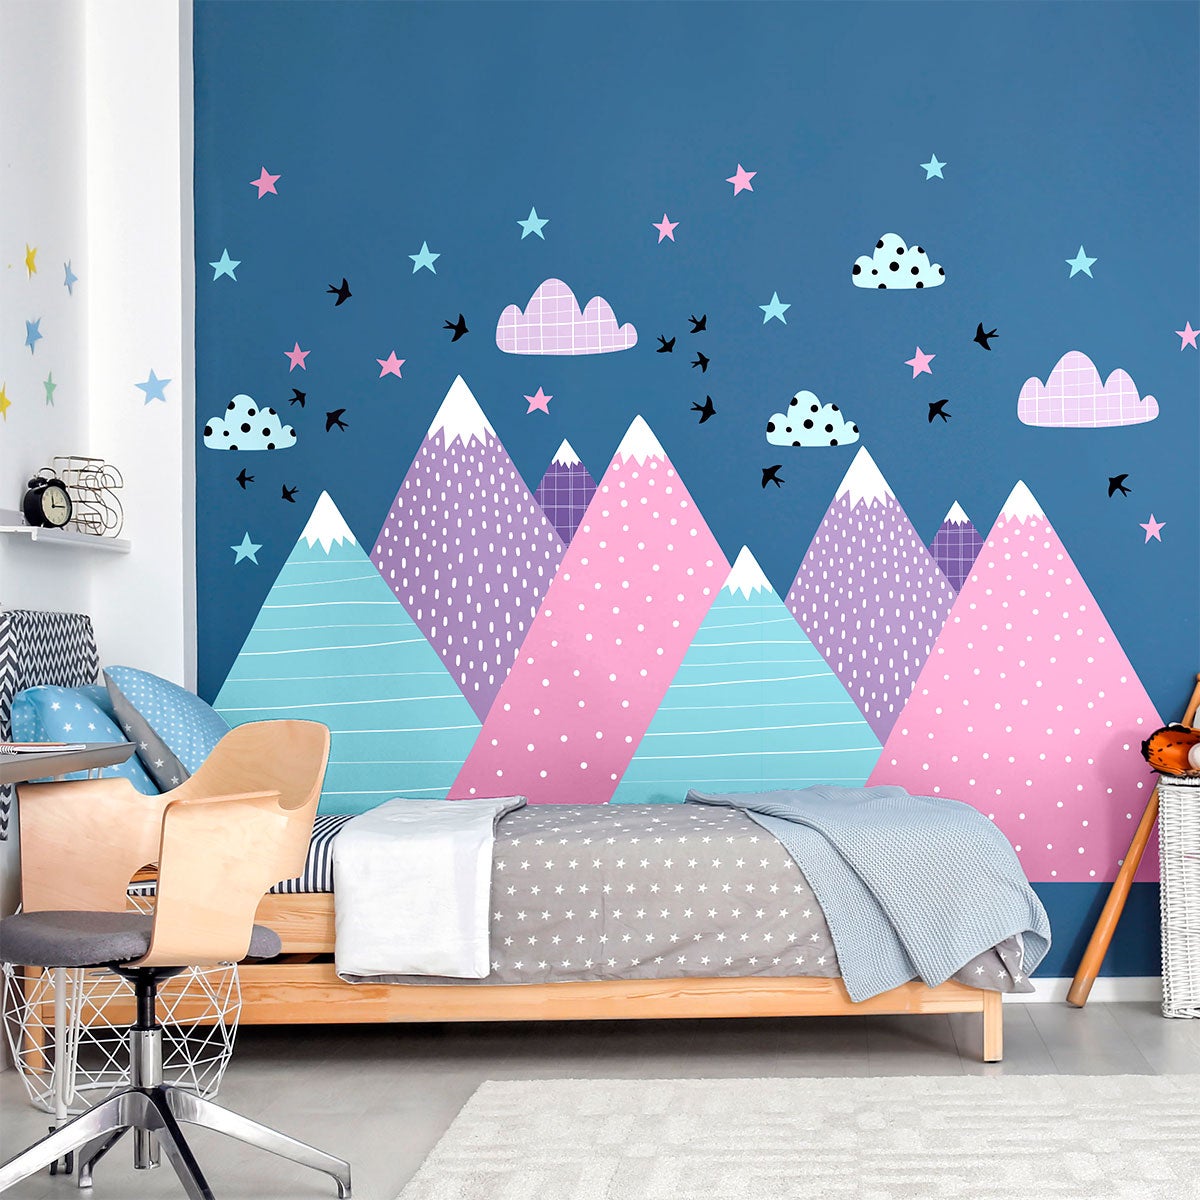 Stickers muraux enfants - Décoration chambre bébé - Autocollant Sticker  mural géant enfant montagnes scandinaves VIKA - 120x180cm